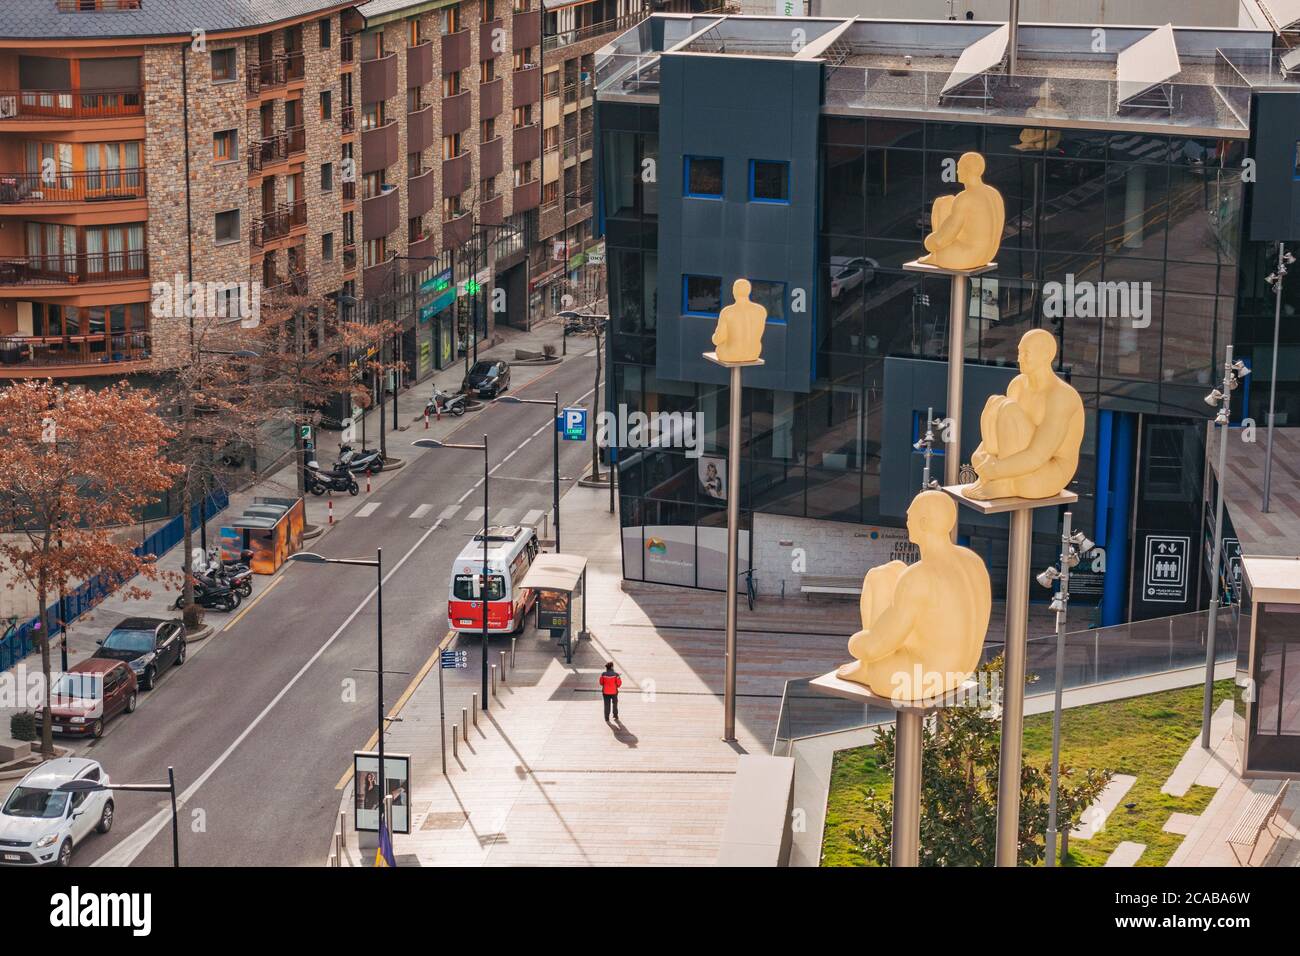 Estatuas de "7 poetas" que representan las 7 parroquias del país montadas sobre postes de acero frente al parlamento y las oficinas gubernamentales de Andorra Foto de stock